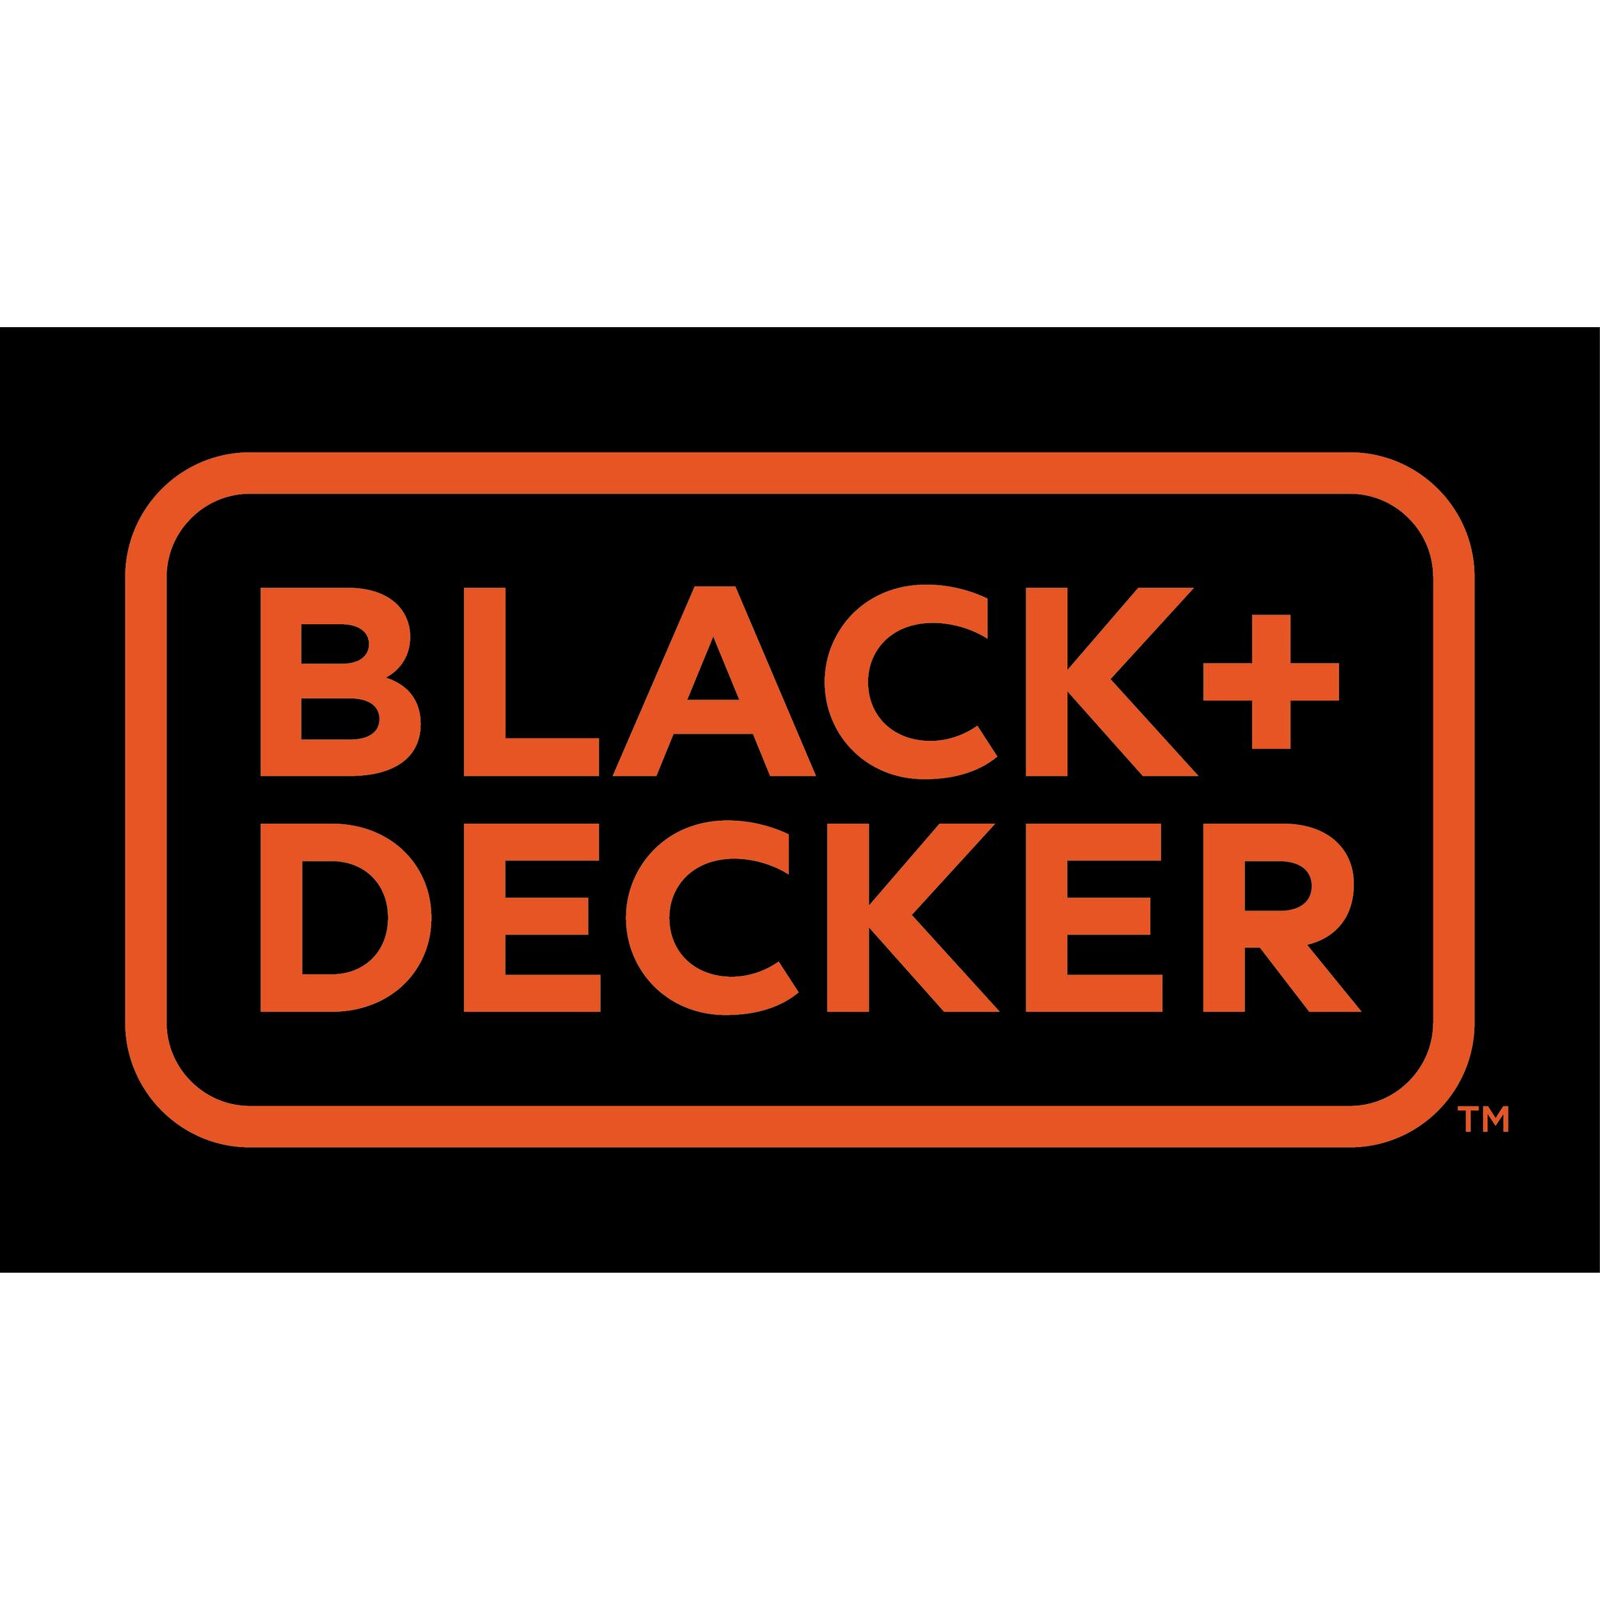 Black  & Decker